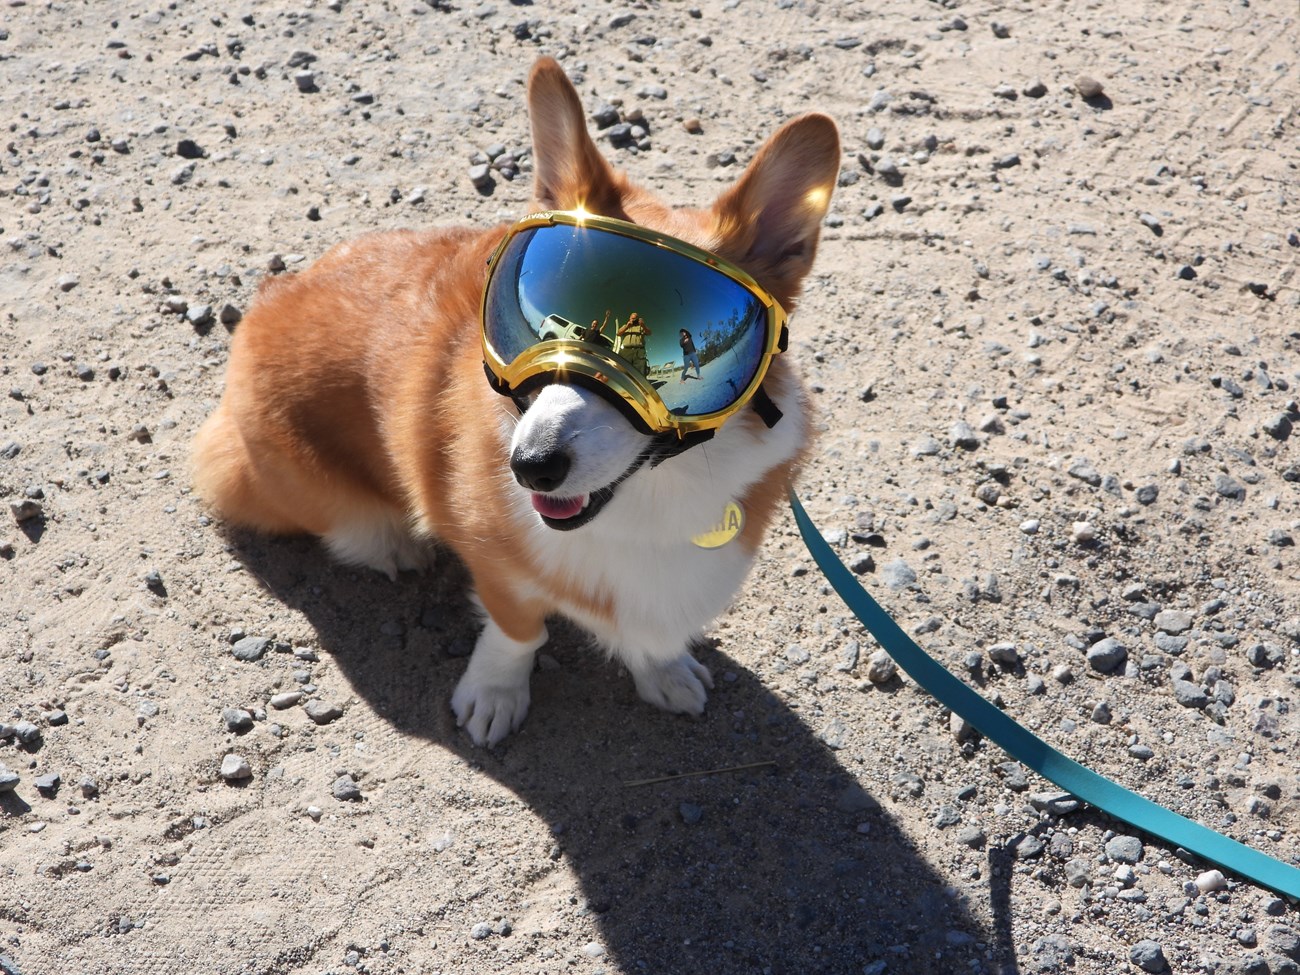 A Corgi dog wearing reflective goggles